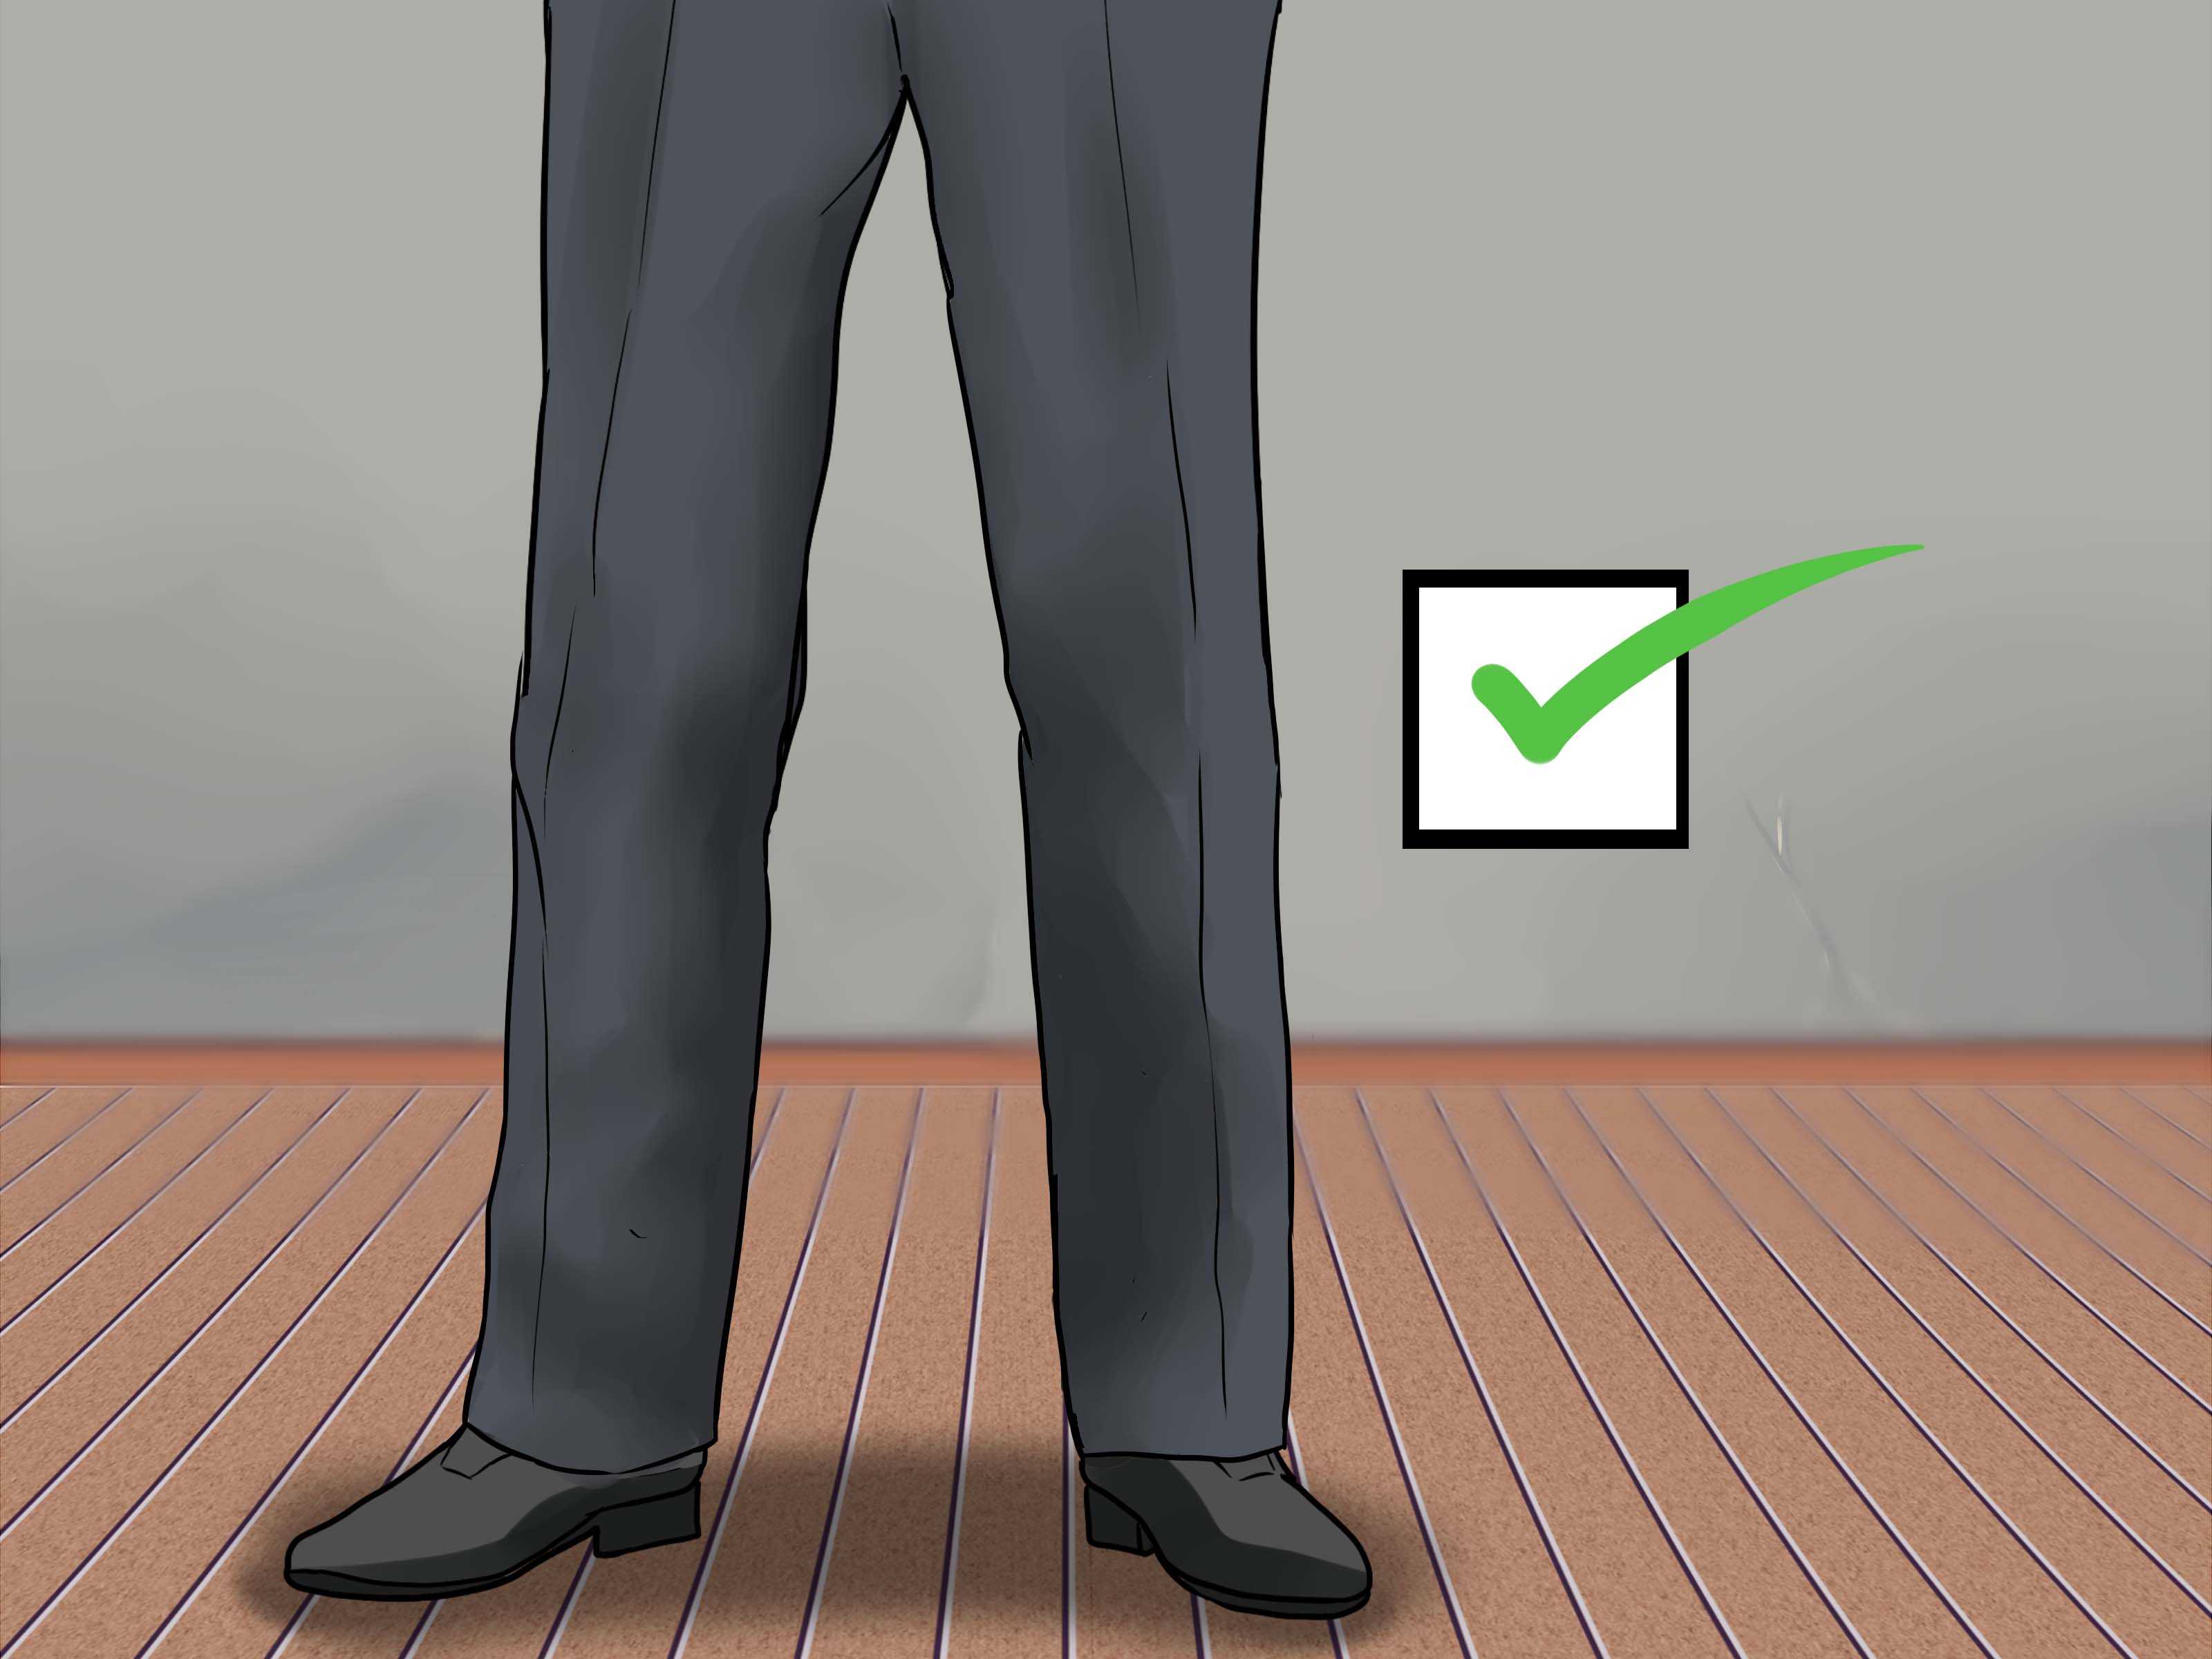 Правильная длина брюк у мужчин с туфлями